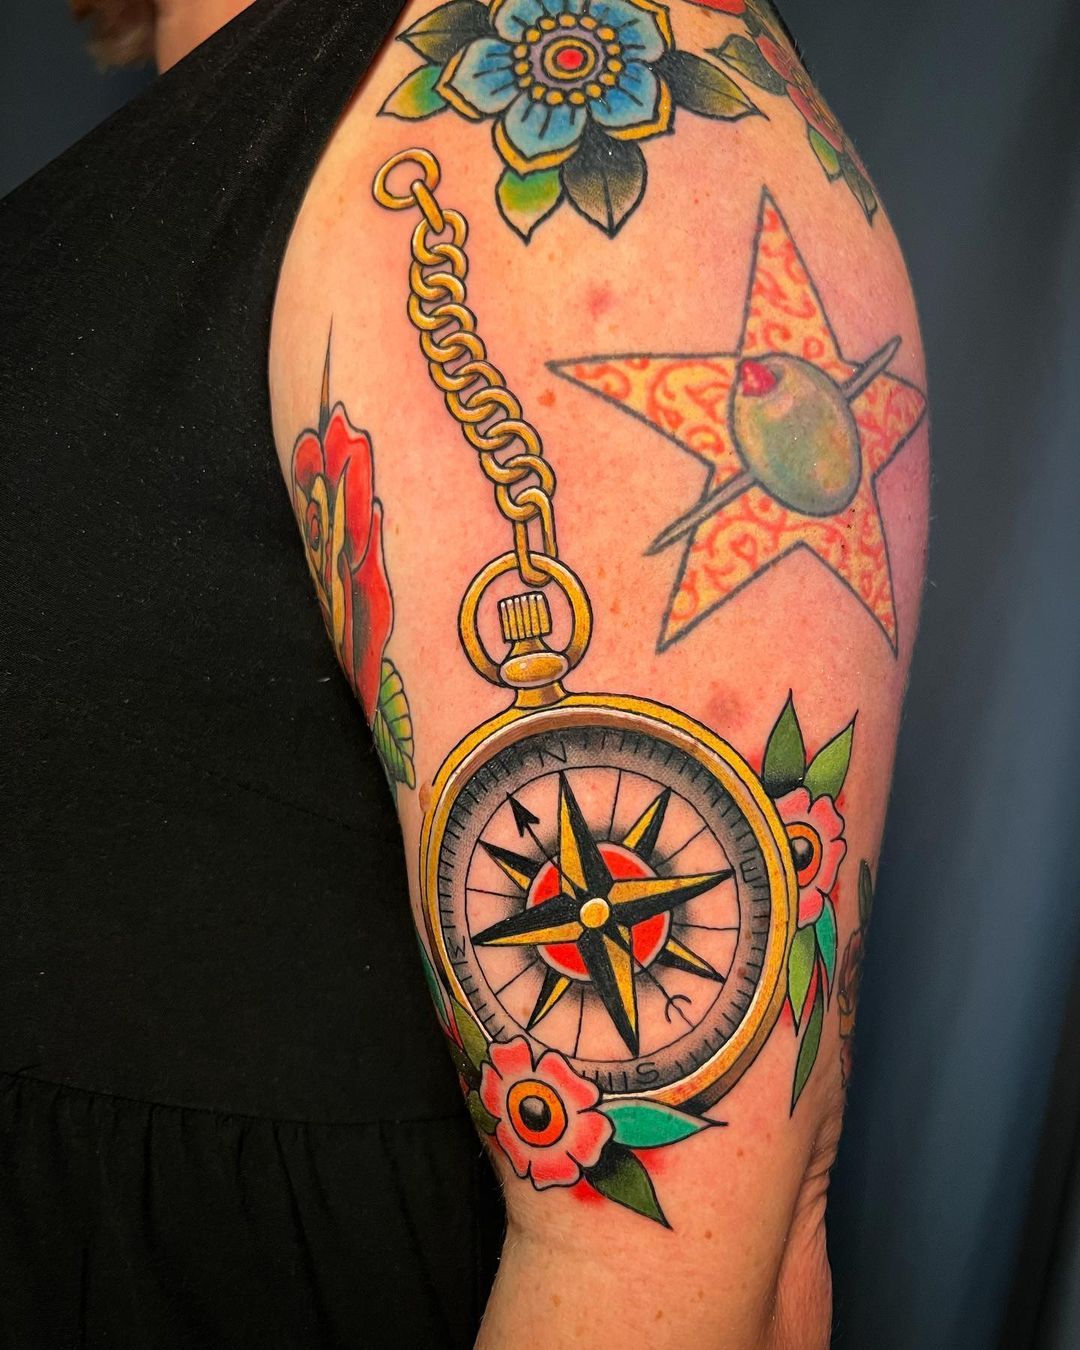 20 Unique Compass Rose Tattoo Ideas